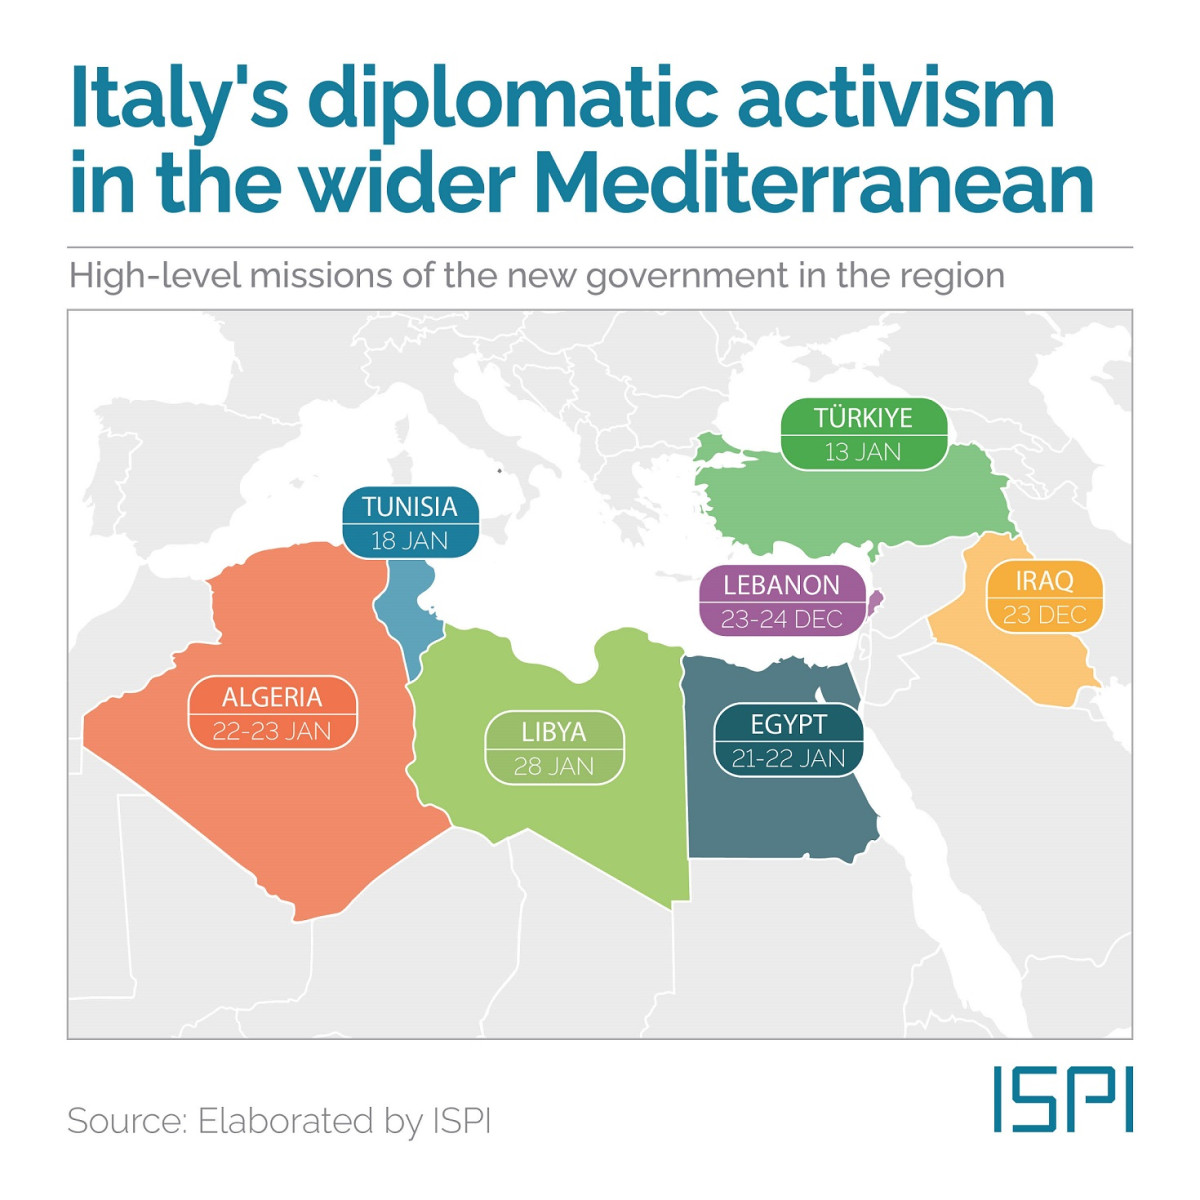 الزيارات الدبلوماسية الإيطالية في منطقة البحر المتوسط (ISPI)